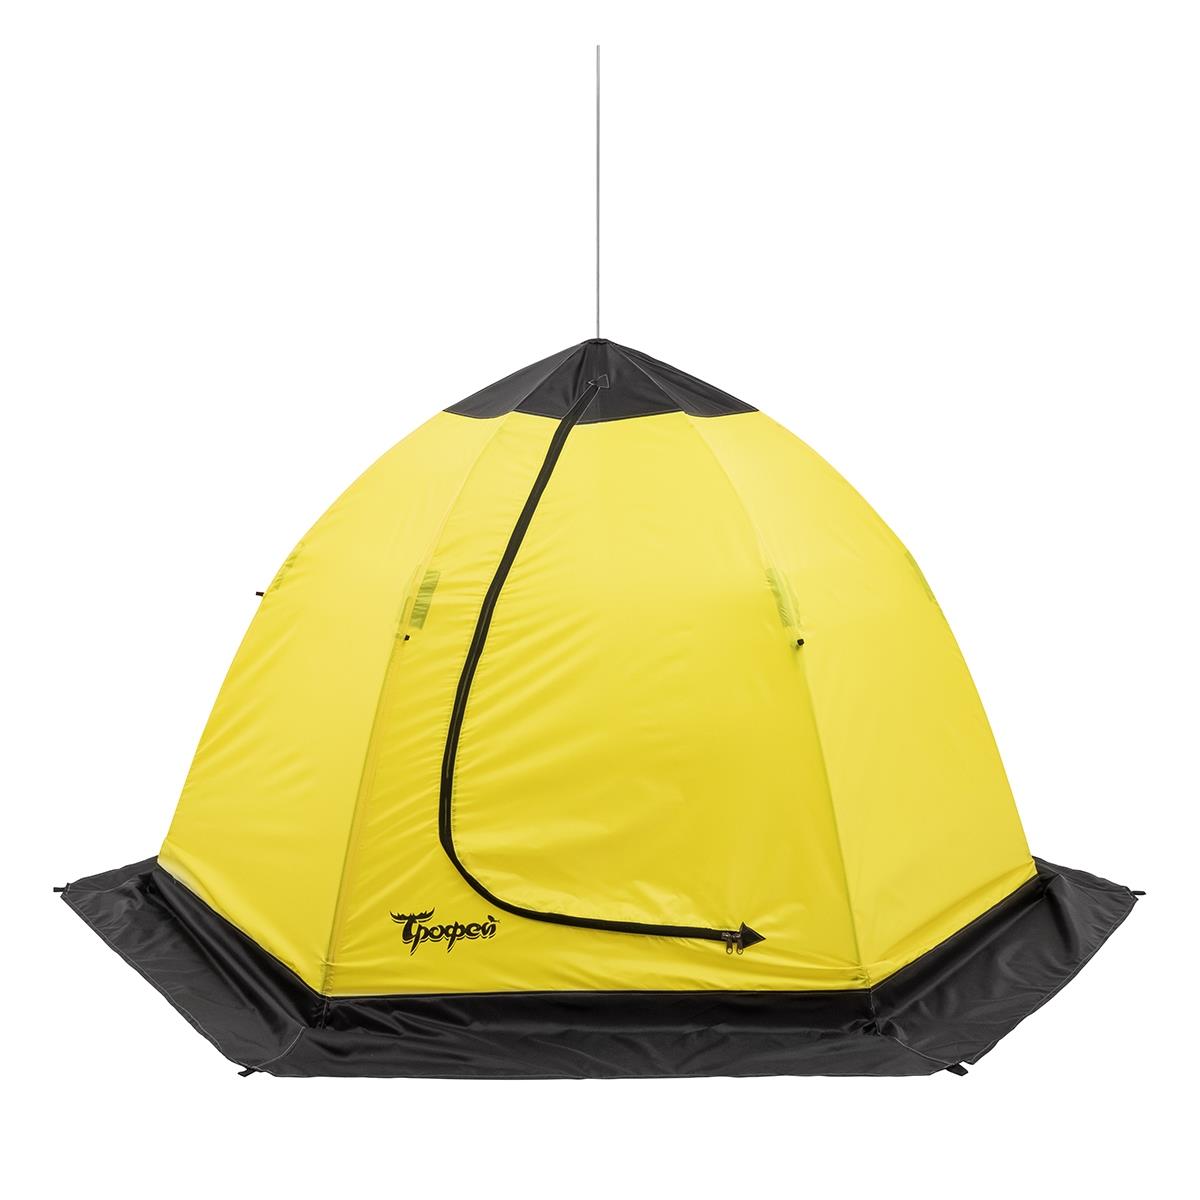 Палатка-зонт 3-местная зимняя ТРОФЕЙ палатка зимняя piramida 2 0х2 0 yellow gray tr isp 200yg трофей